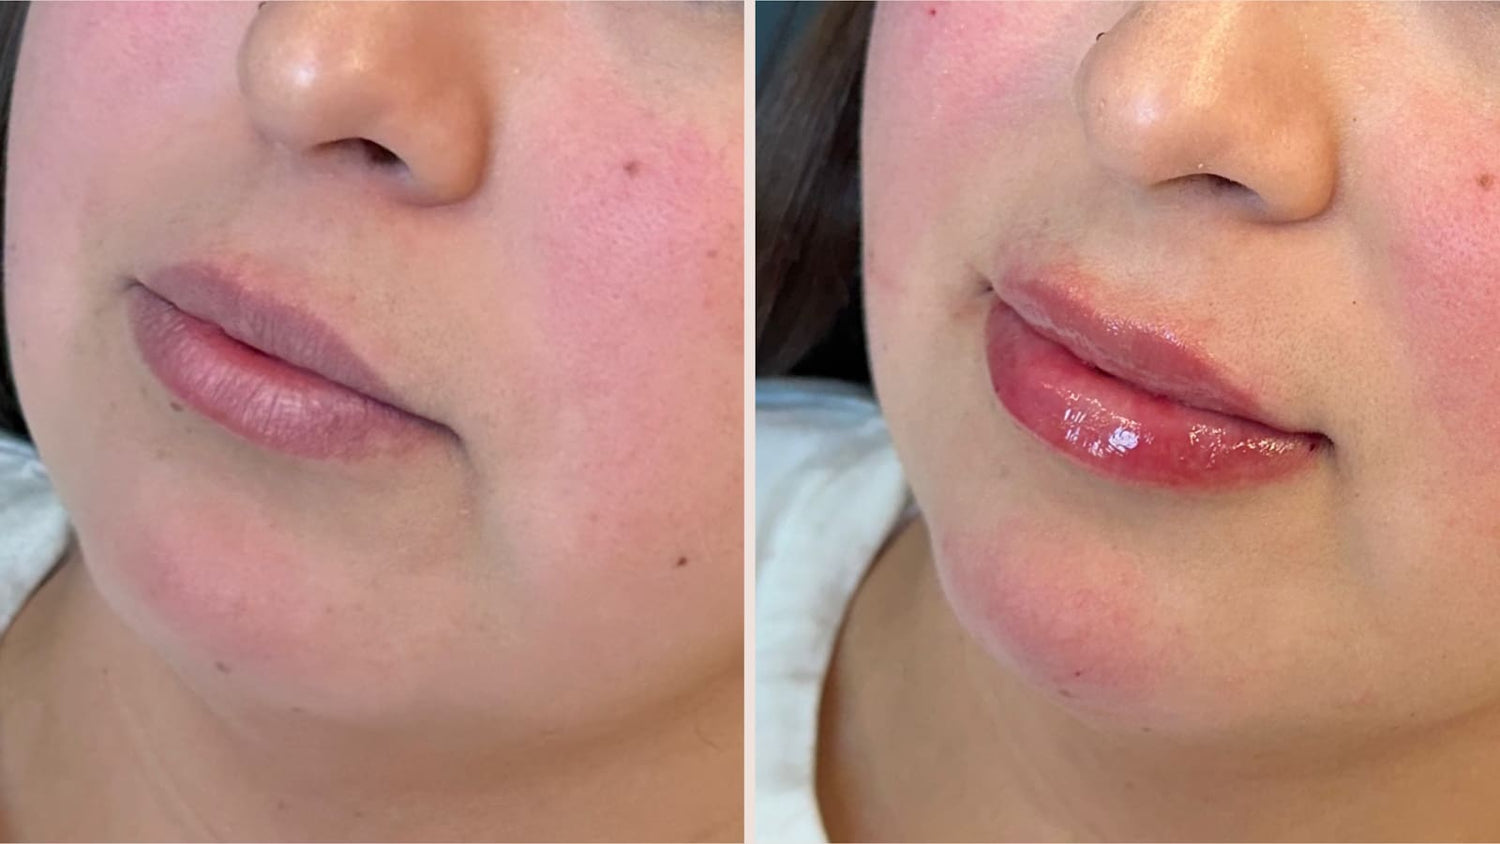 enhanced lips after filler treatment